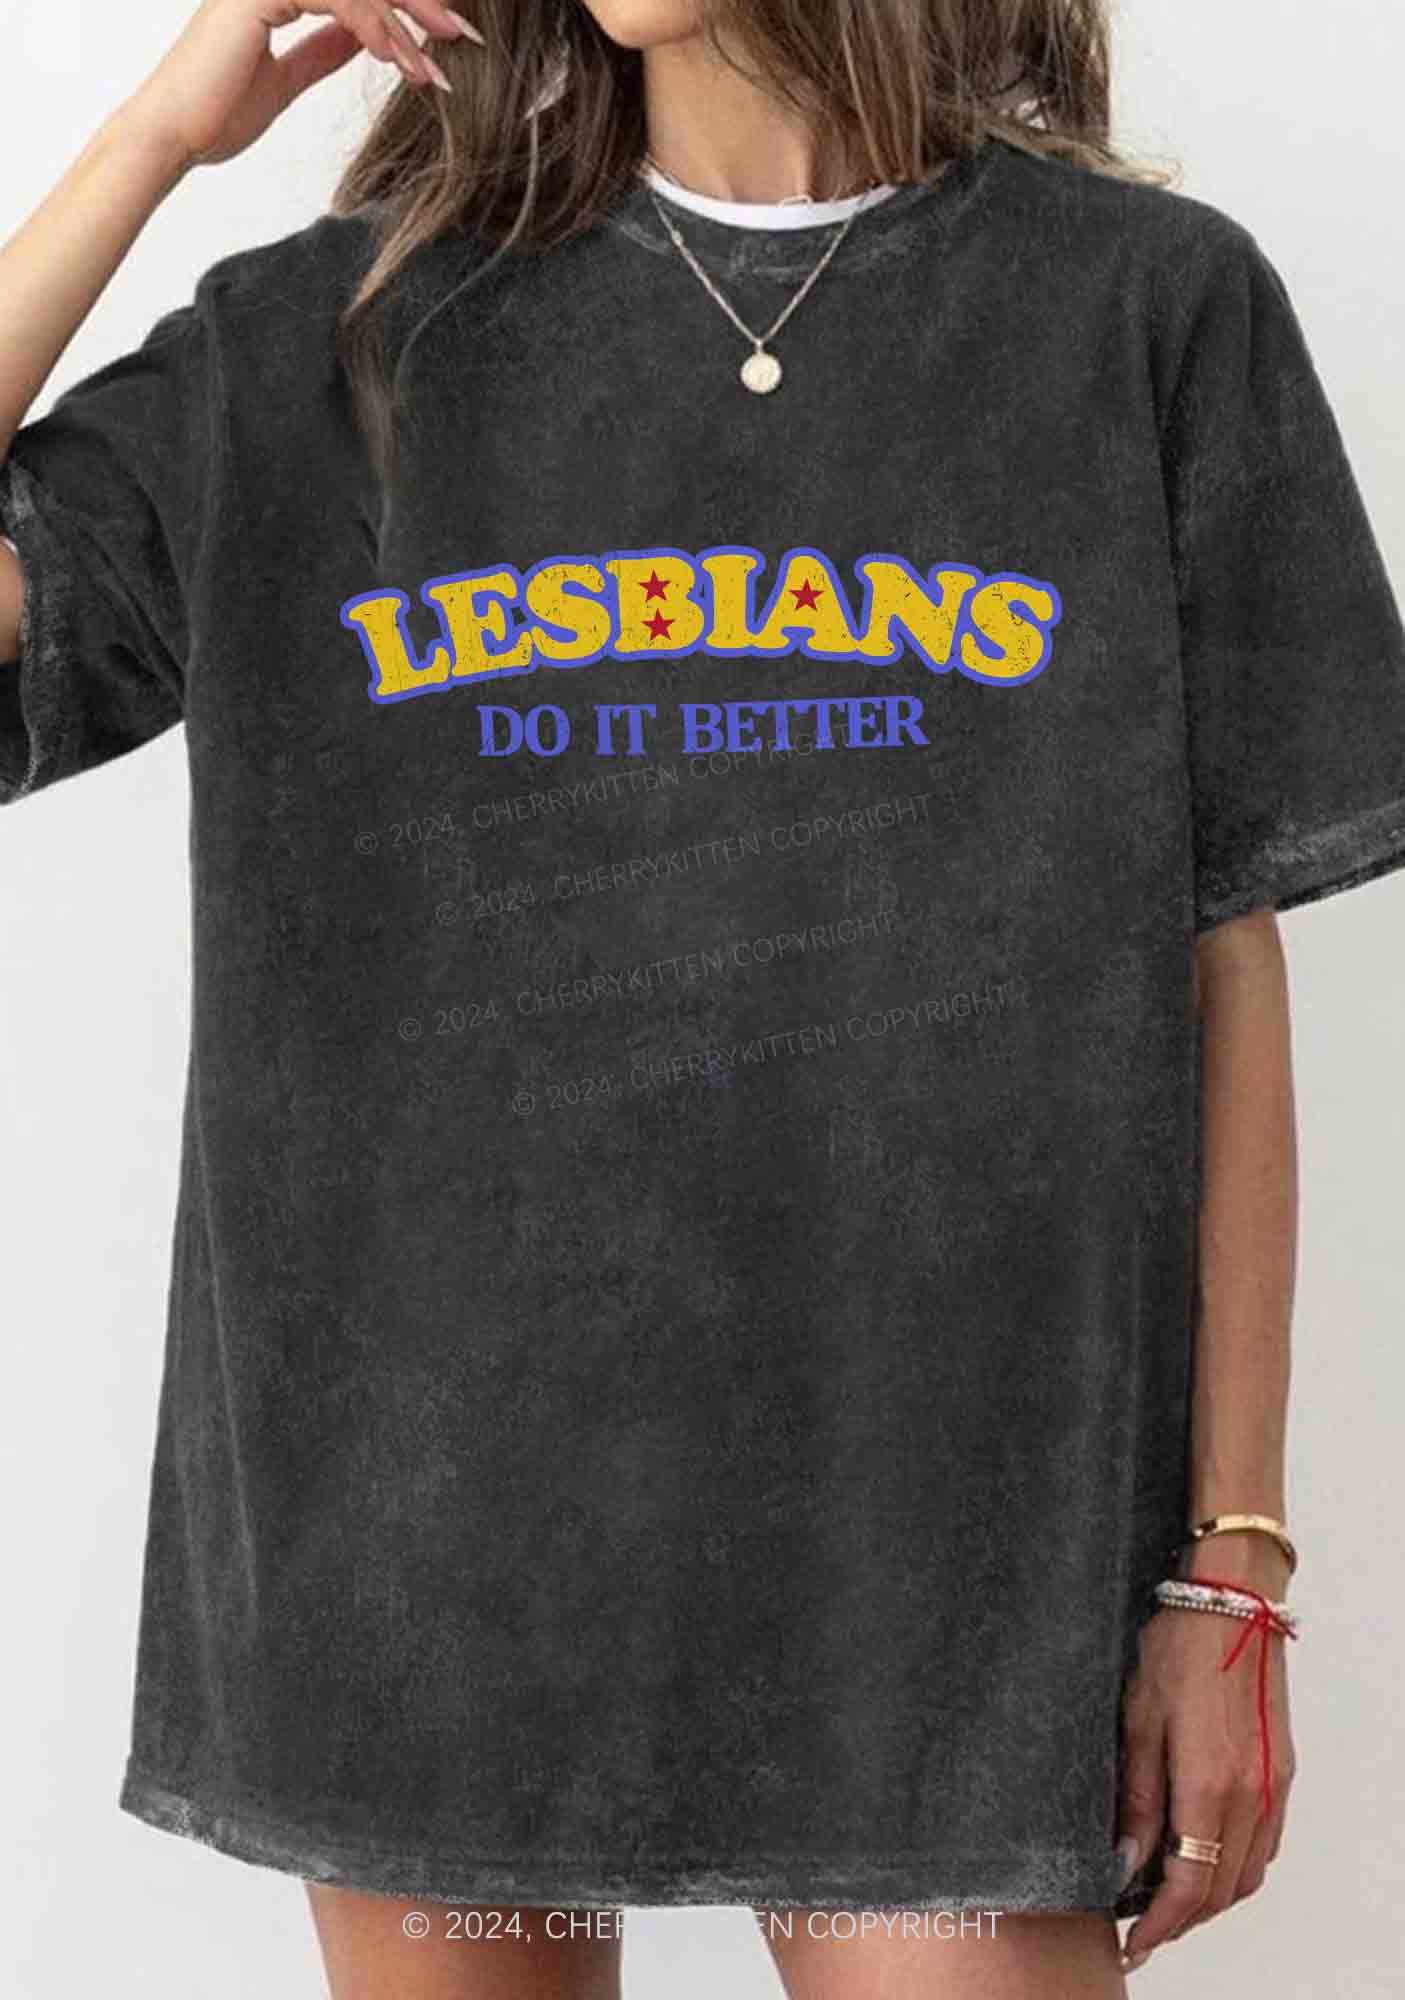 Lesbians Do It Better Y2K Washed Tee Cherrykitten